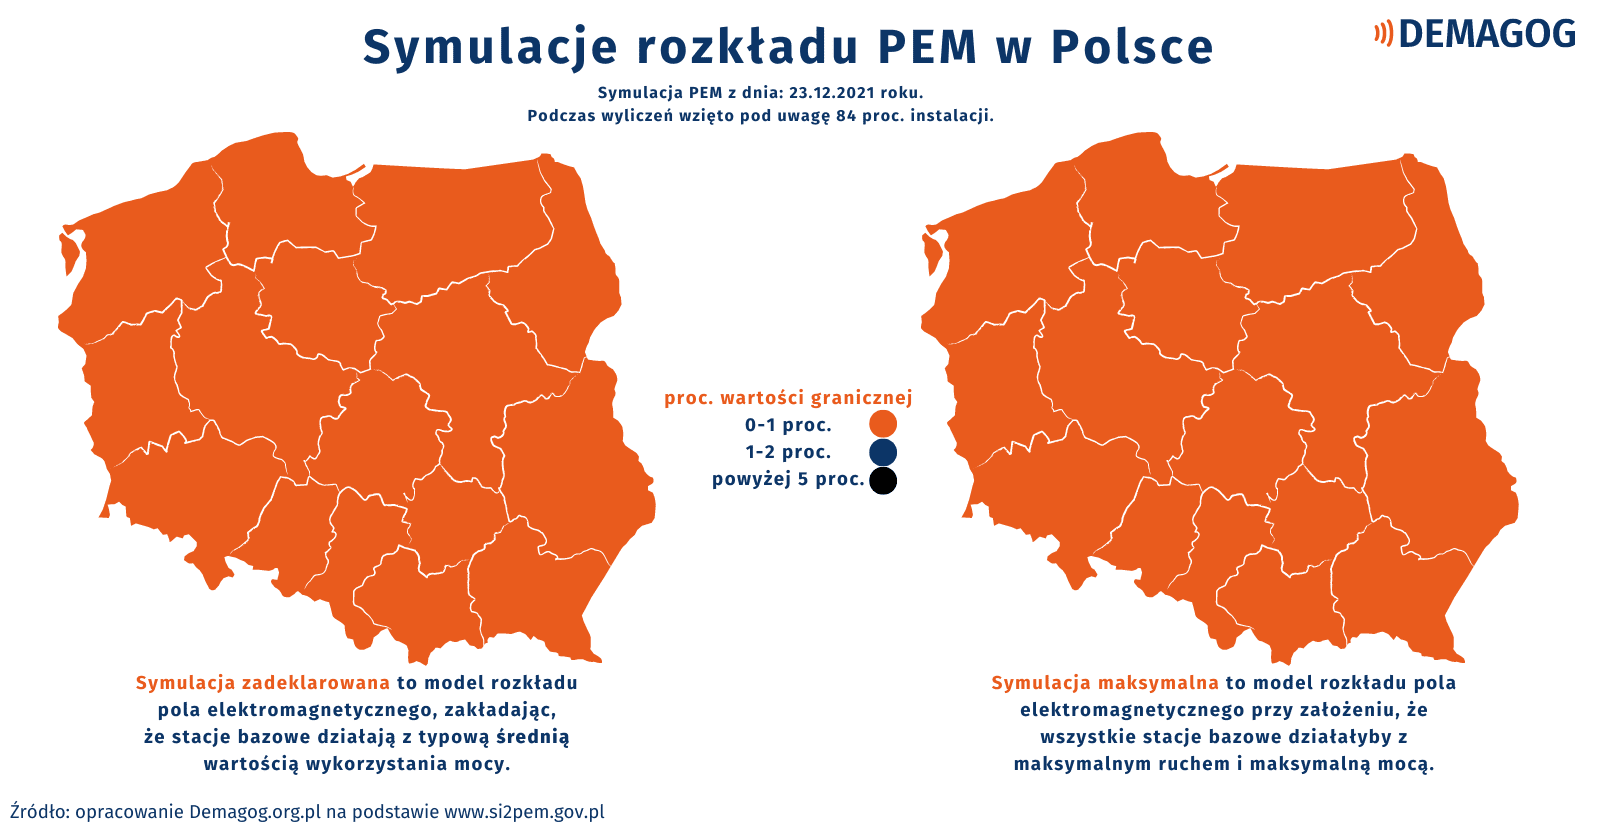 Mapy przedstawiające symulacje rozkładu PEM w Polsce. Całe terytorium Polski jest pokryte kolorem pomarańczowym oznaczającym od 0 do 1 proc. wartości granicznej.